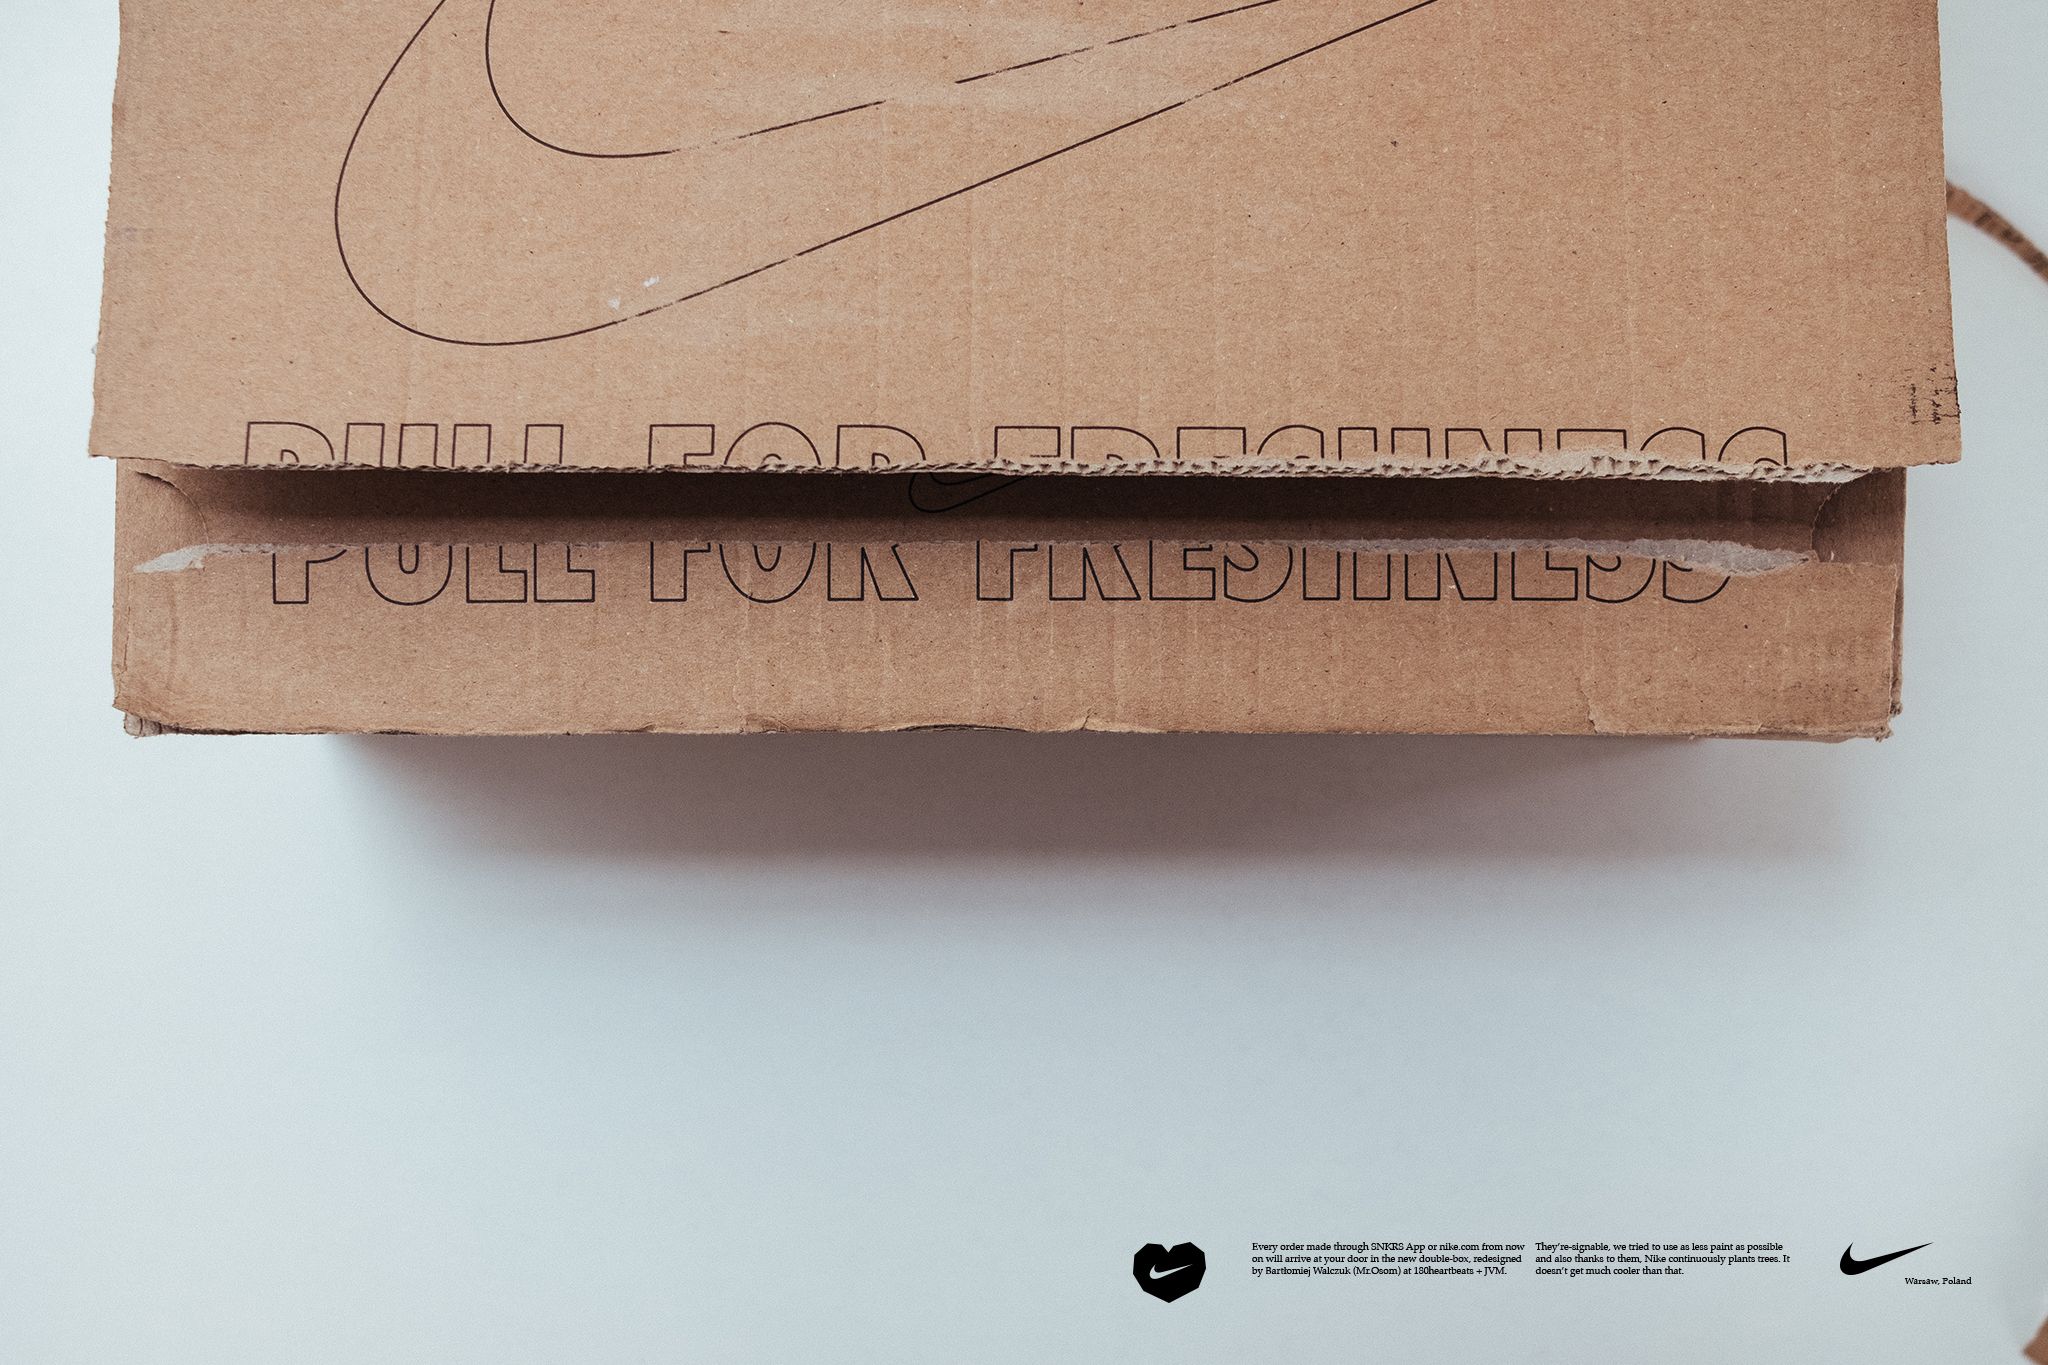 Polak zaprojektował pudełko, w który wysyłane są zamówienia z nike.com